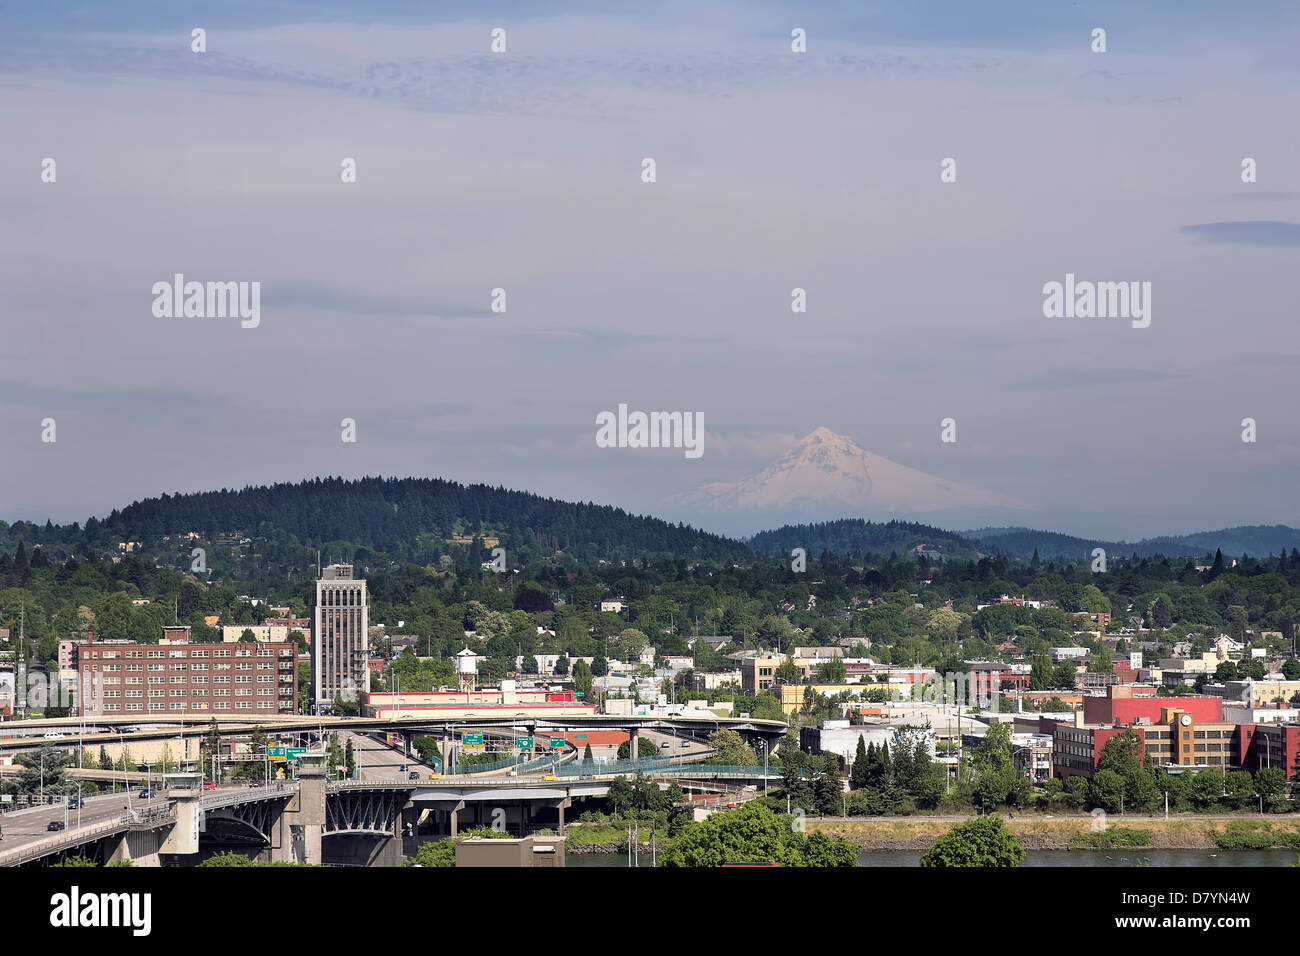 Le centre-ville de Portland (Oregon) avec le Mont Hood et la Willamette River View Banque D'Images